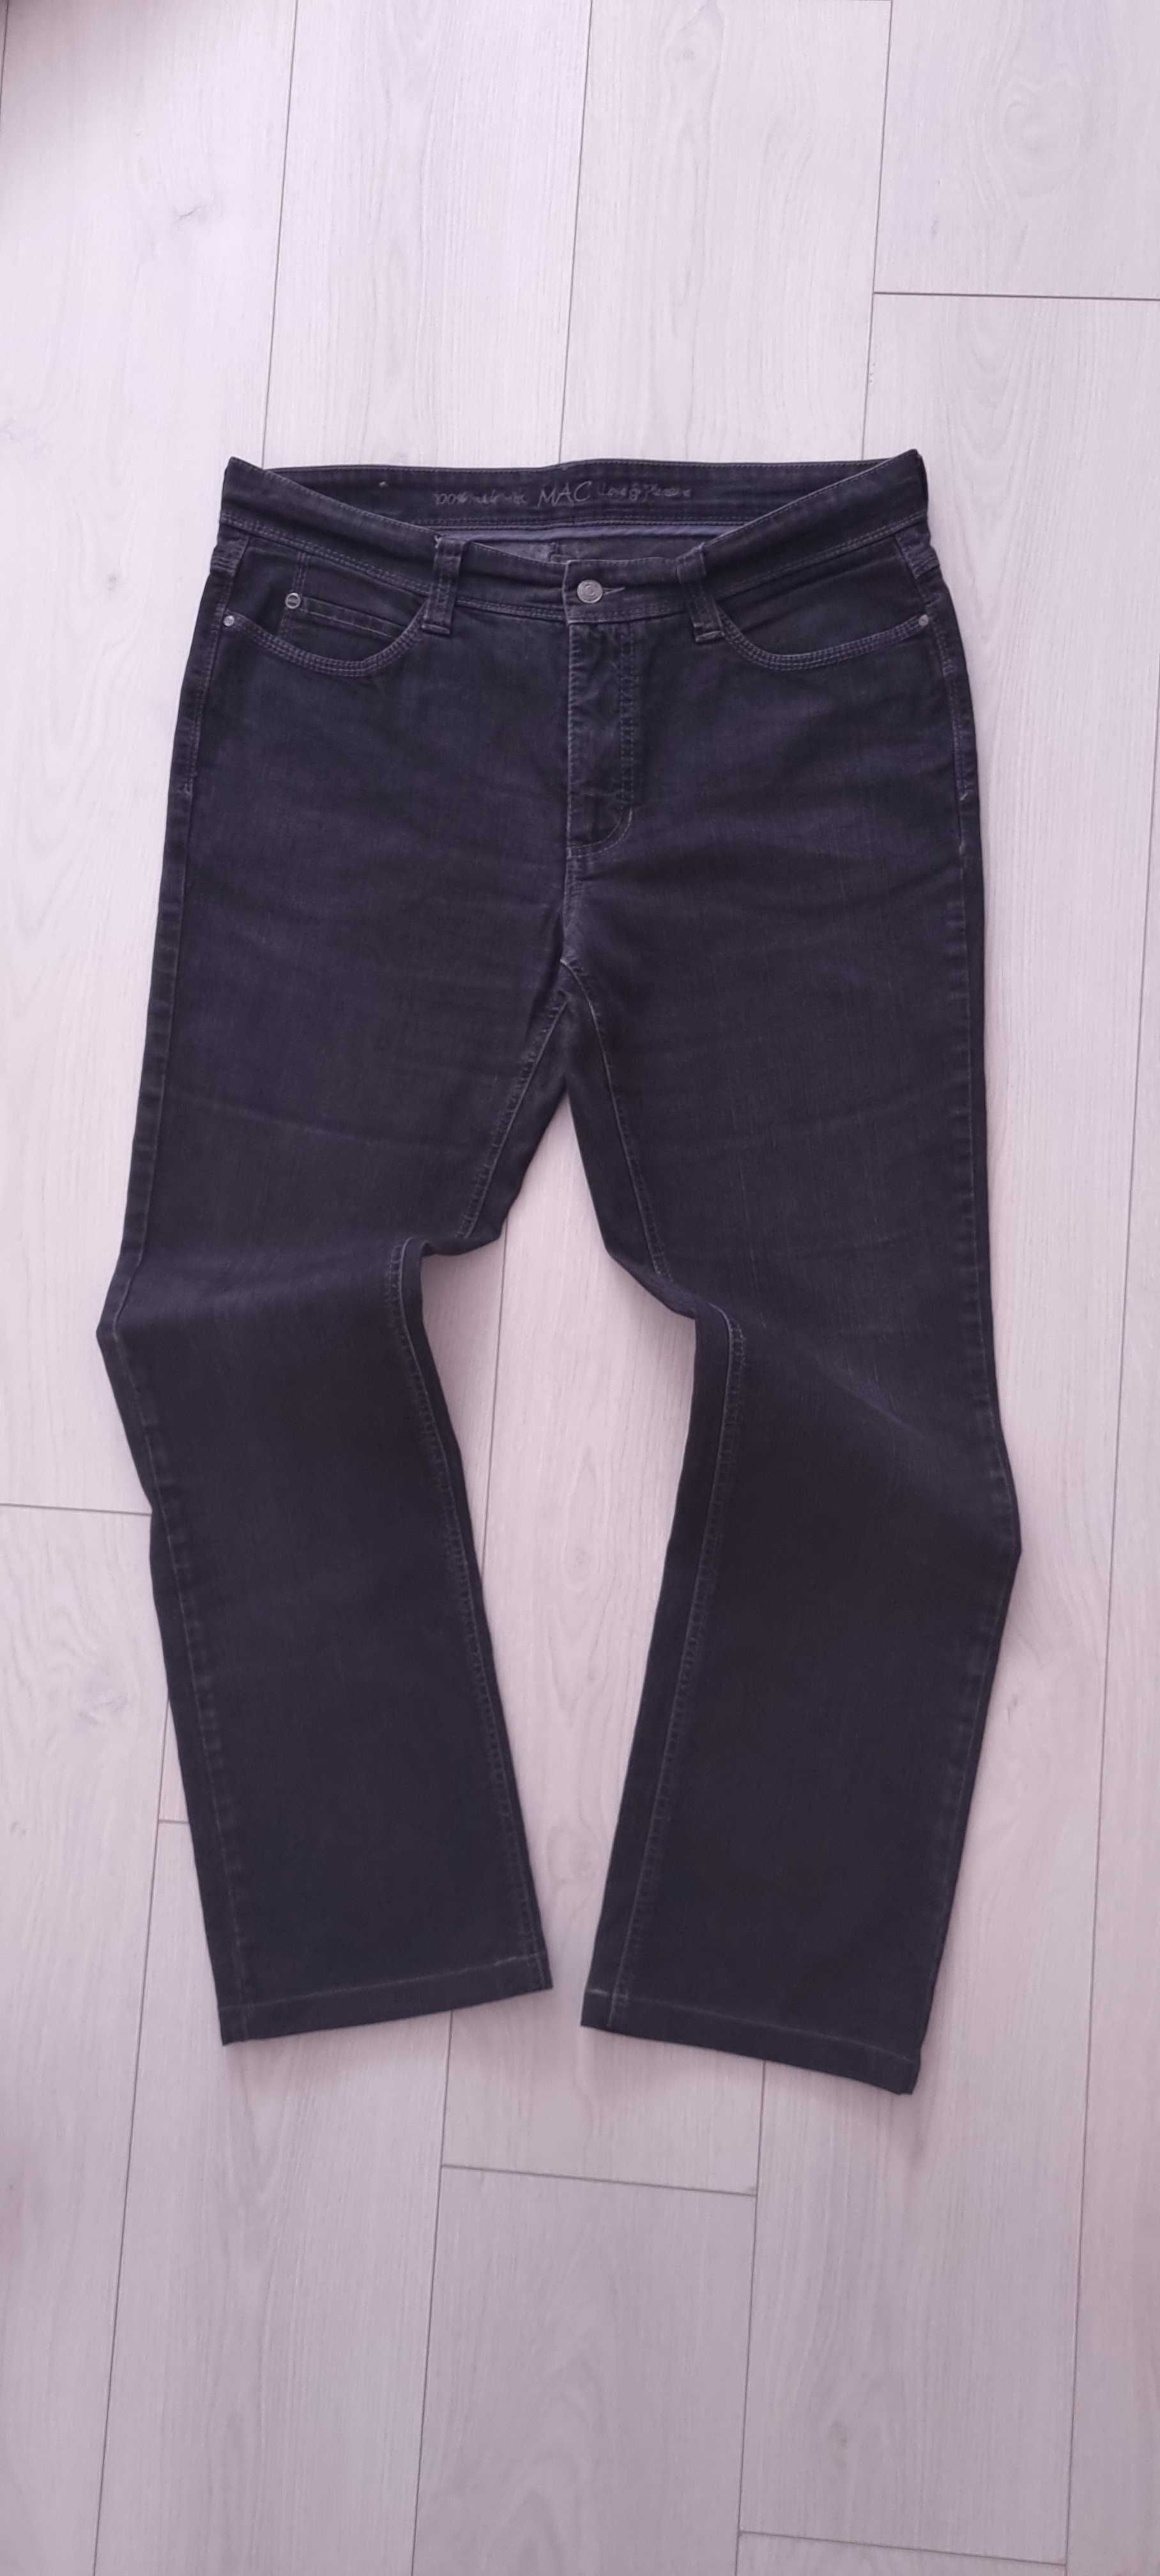 Модные брендовые мужские джинсы прямого пошива